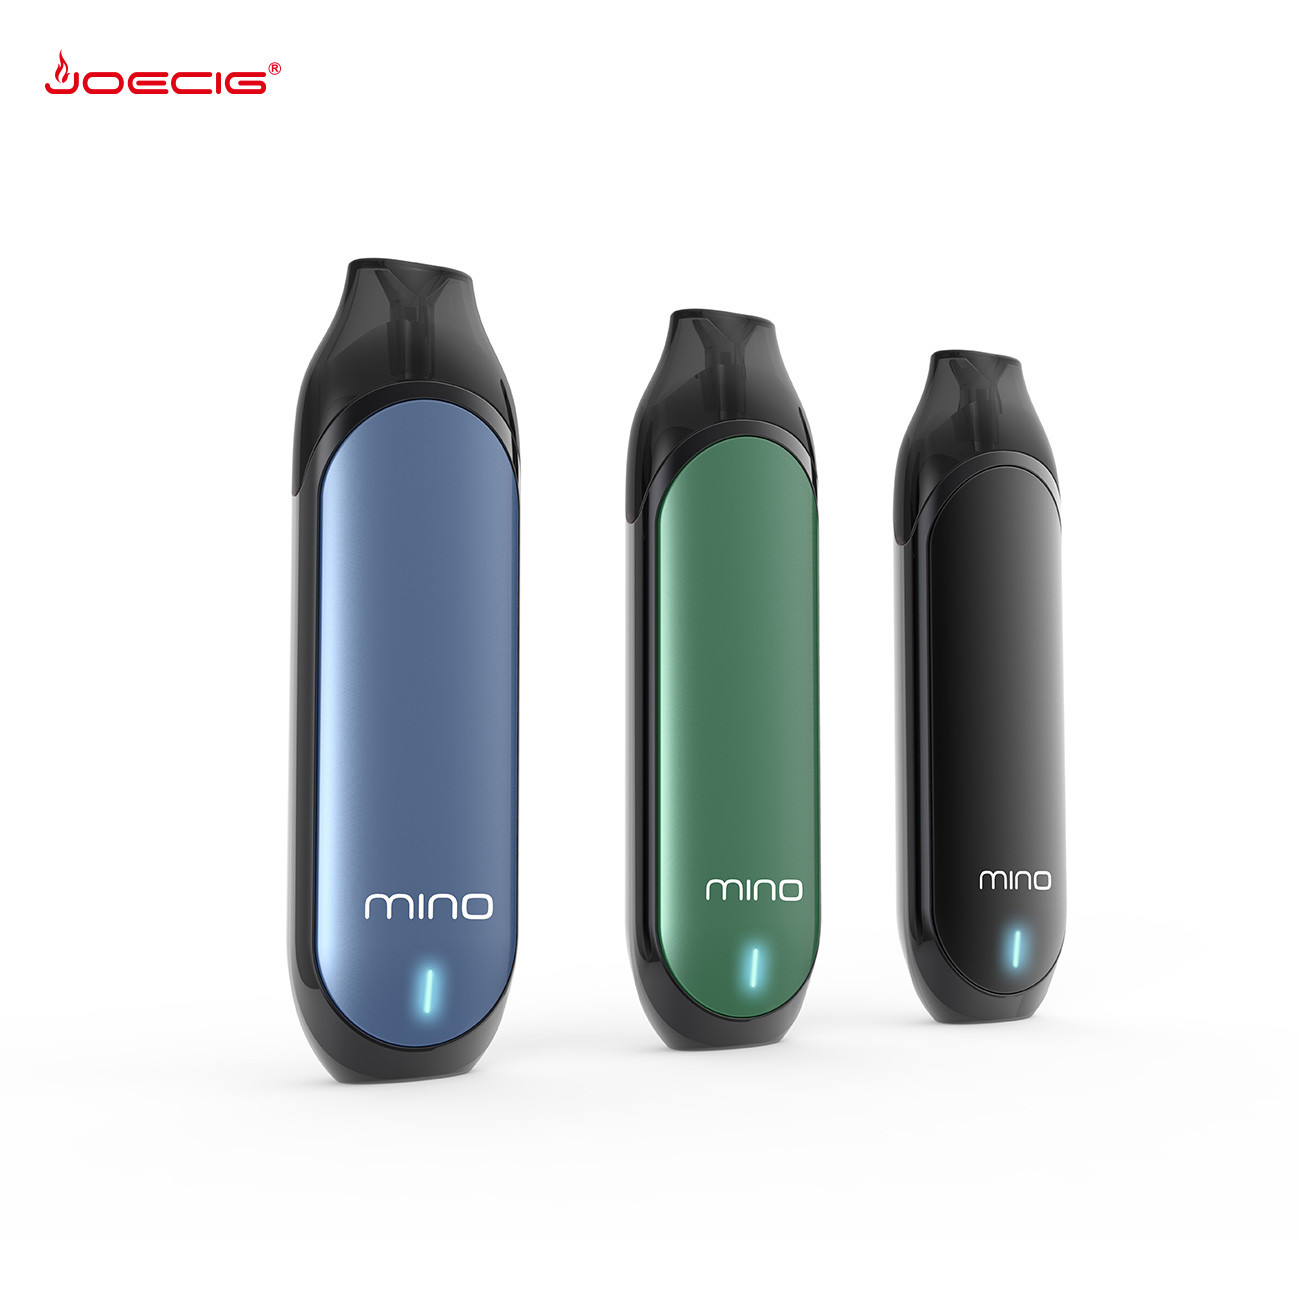 2019 Joecig Nuevos productos Mino pod system con cápsulas recargables de 1,5 ml